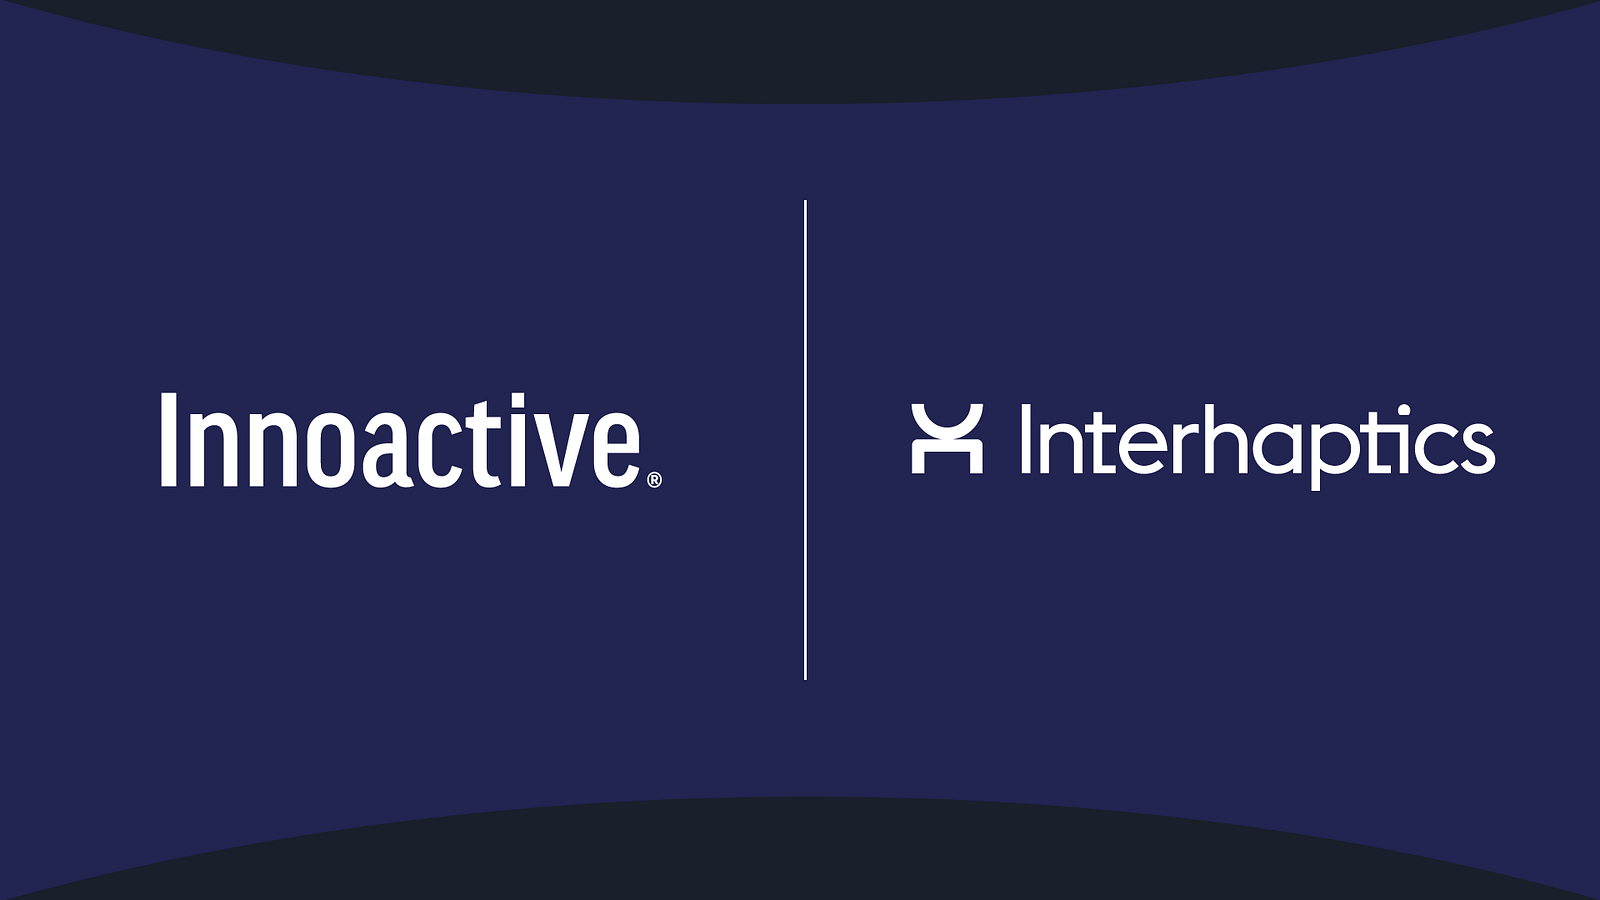 innoactive interhaptics partnership